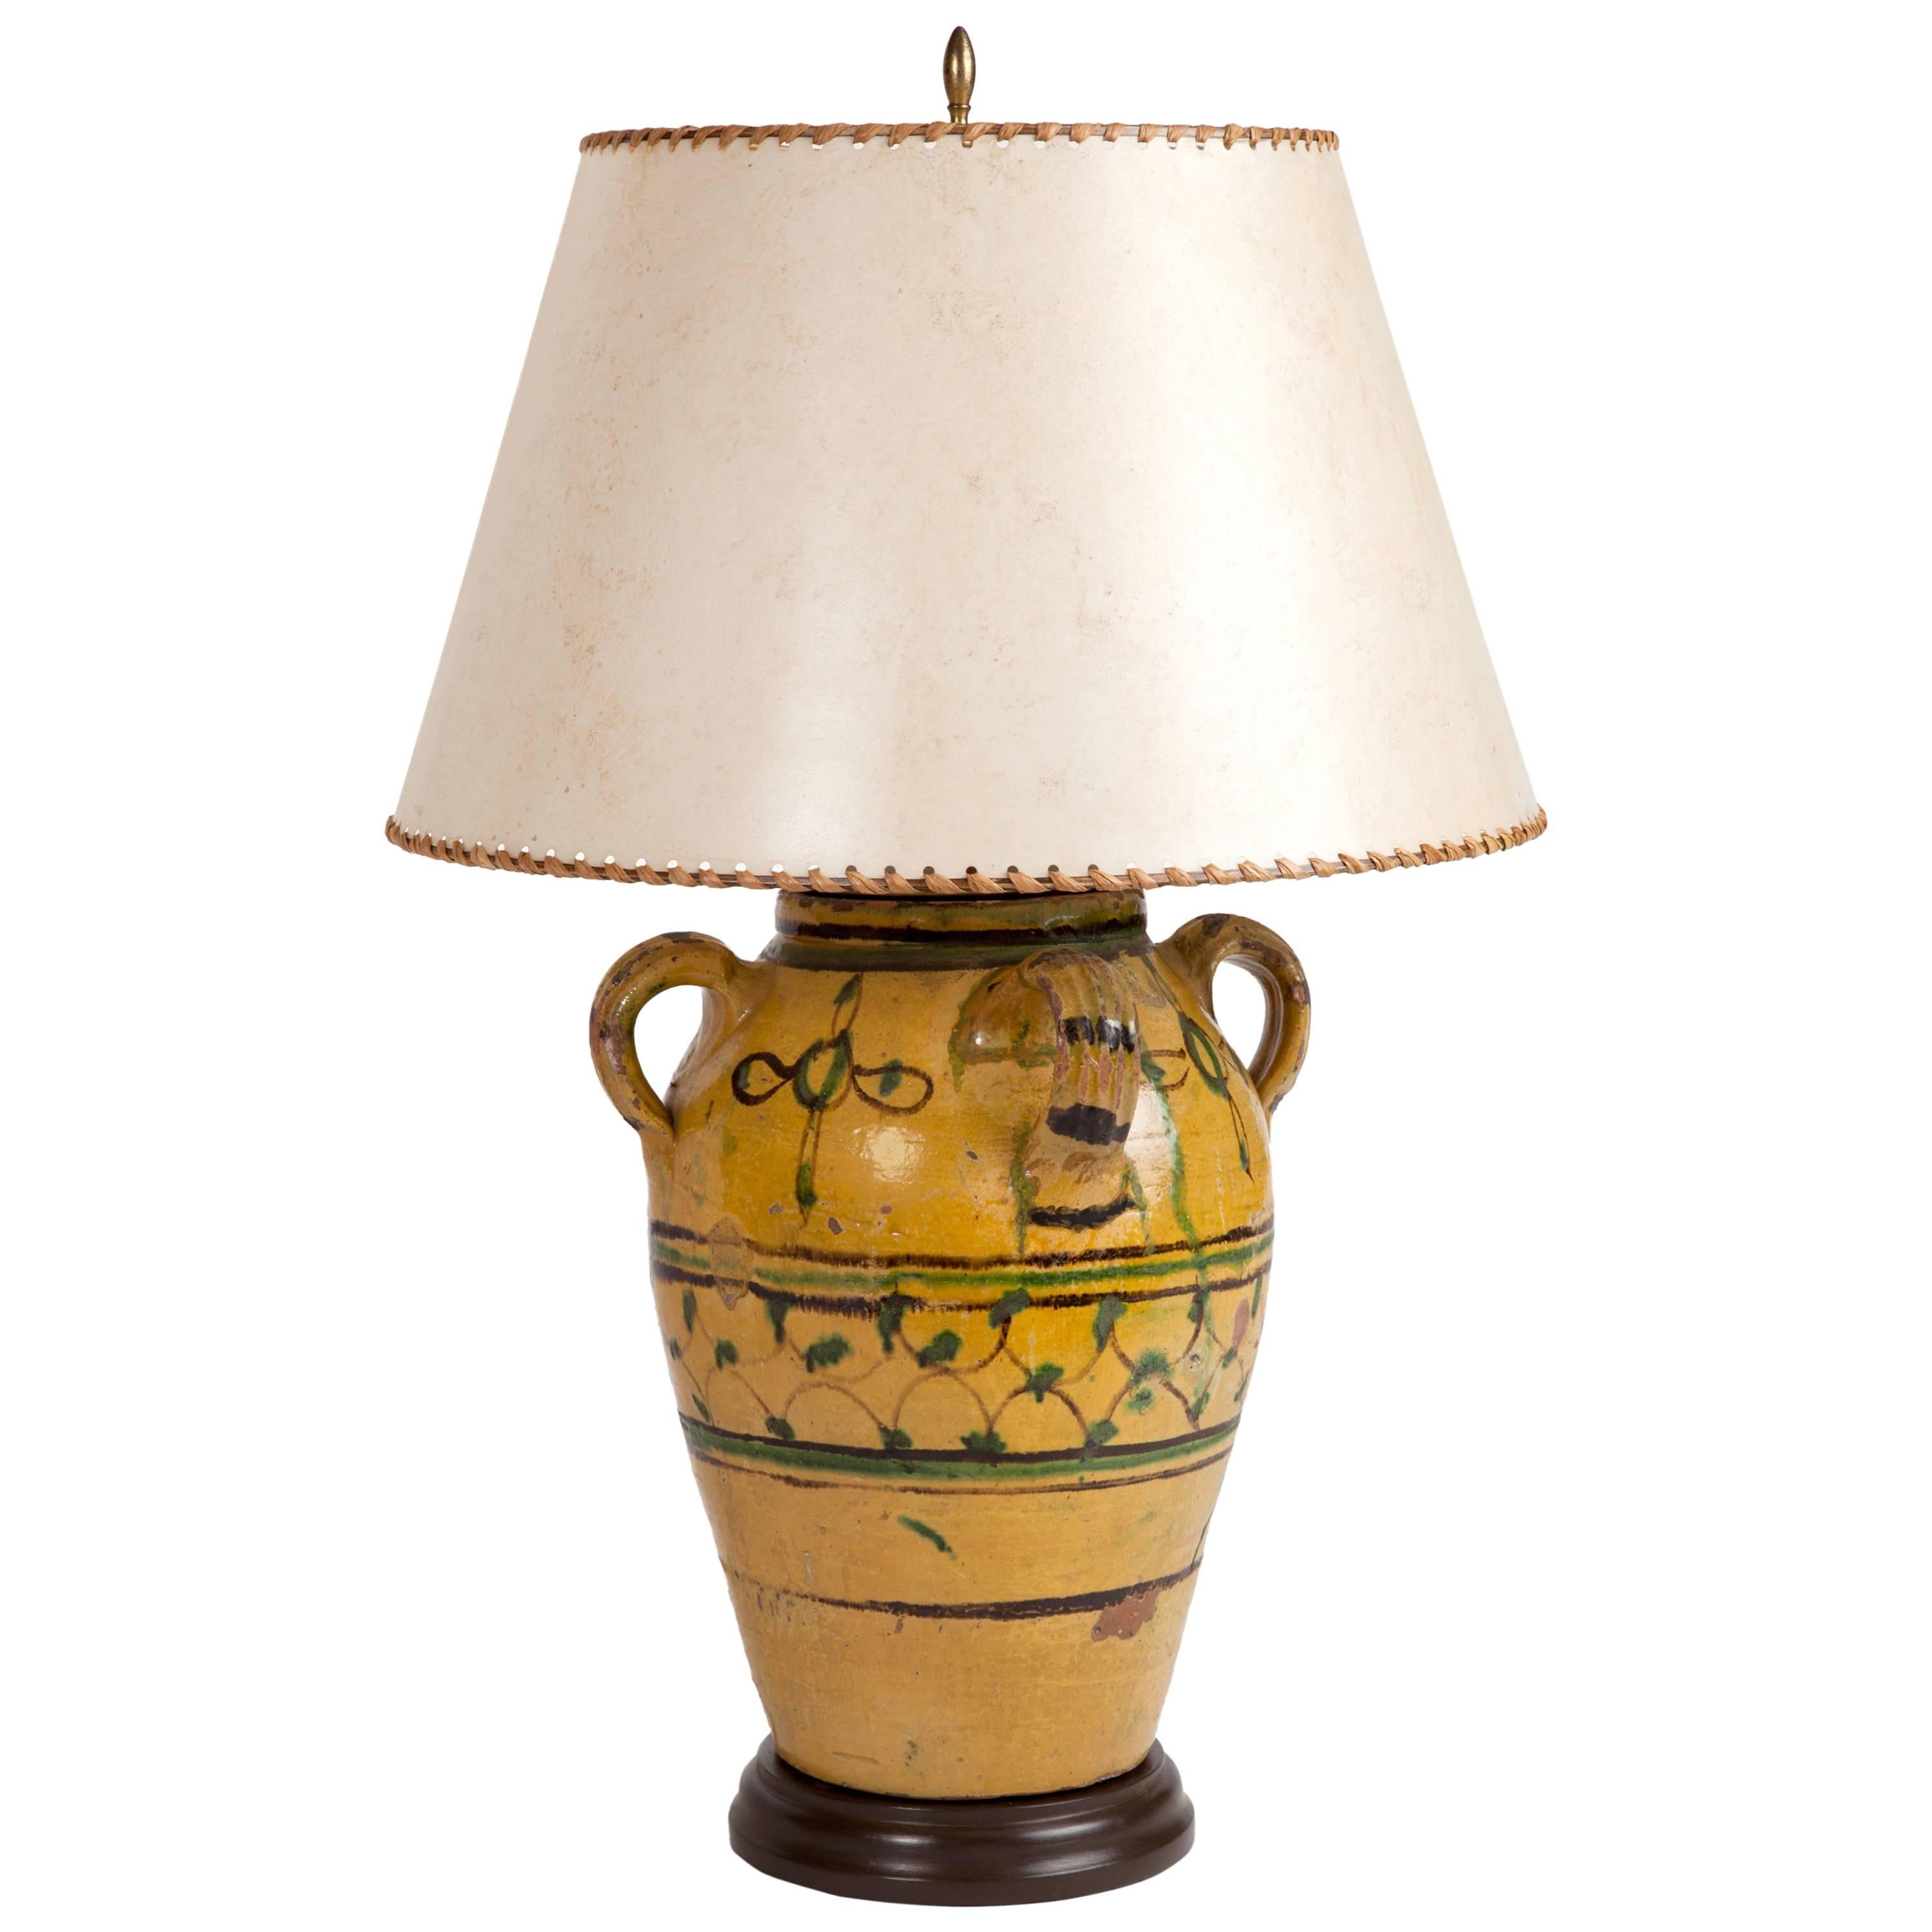 Antique Spanish Olive Jar Lamp